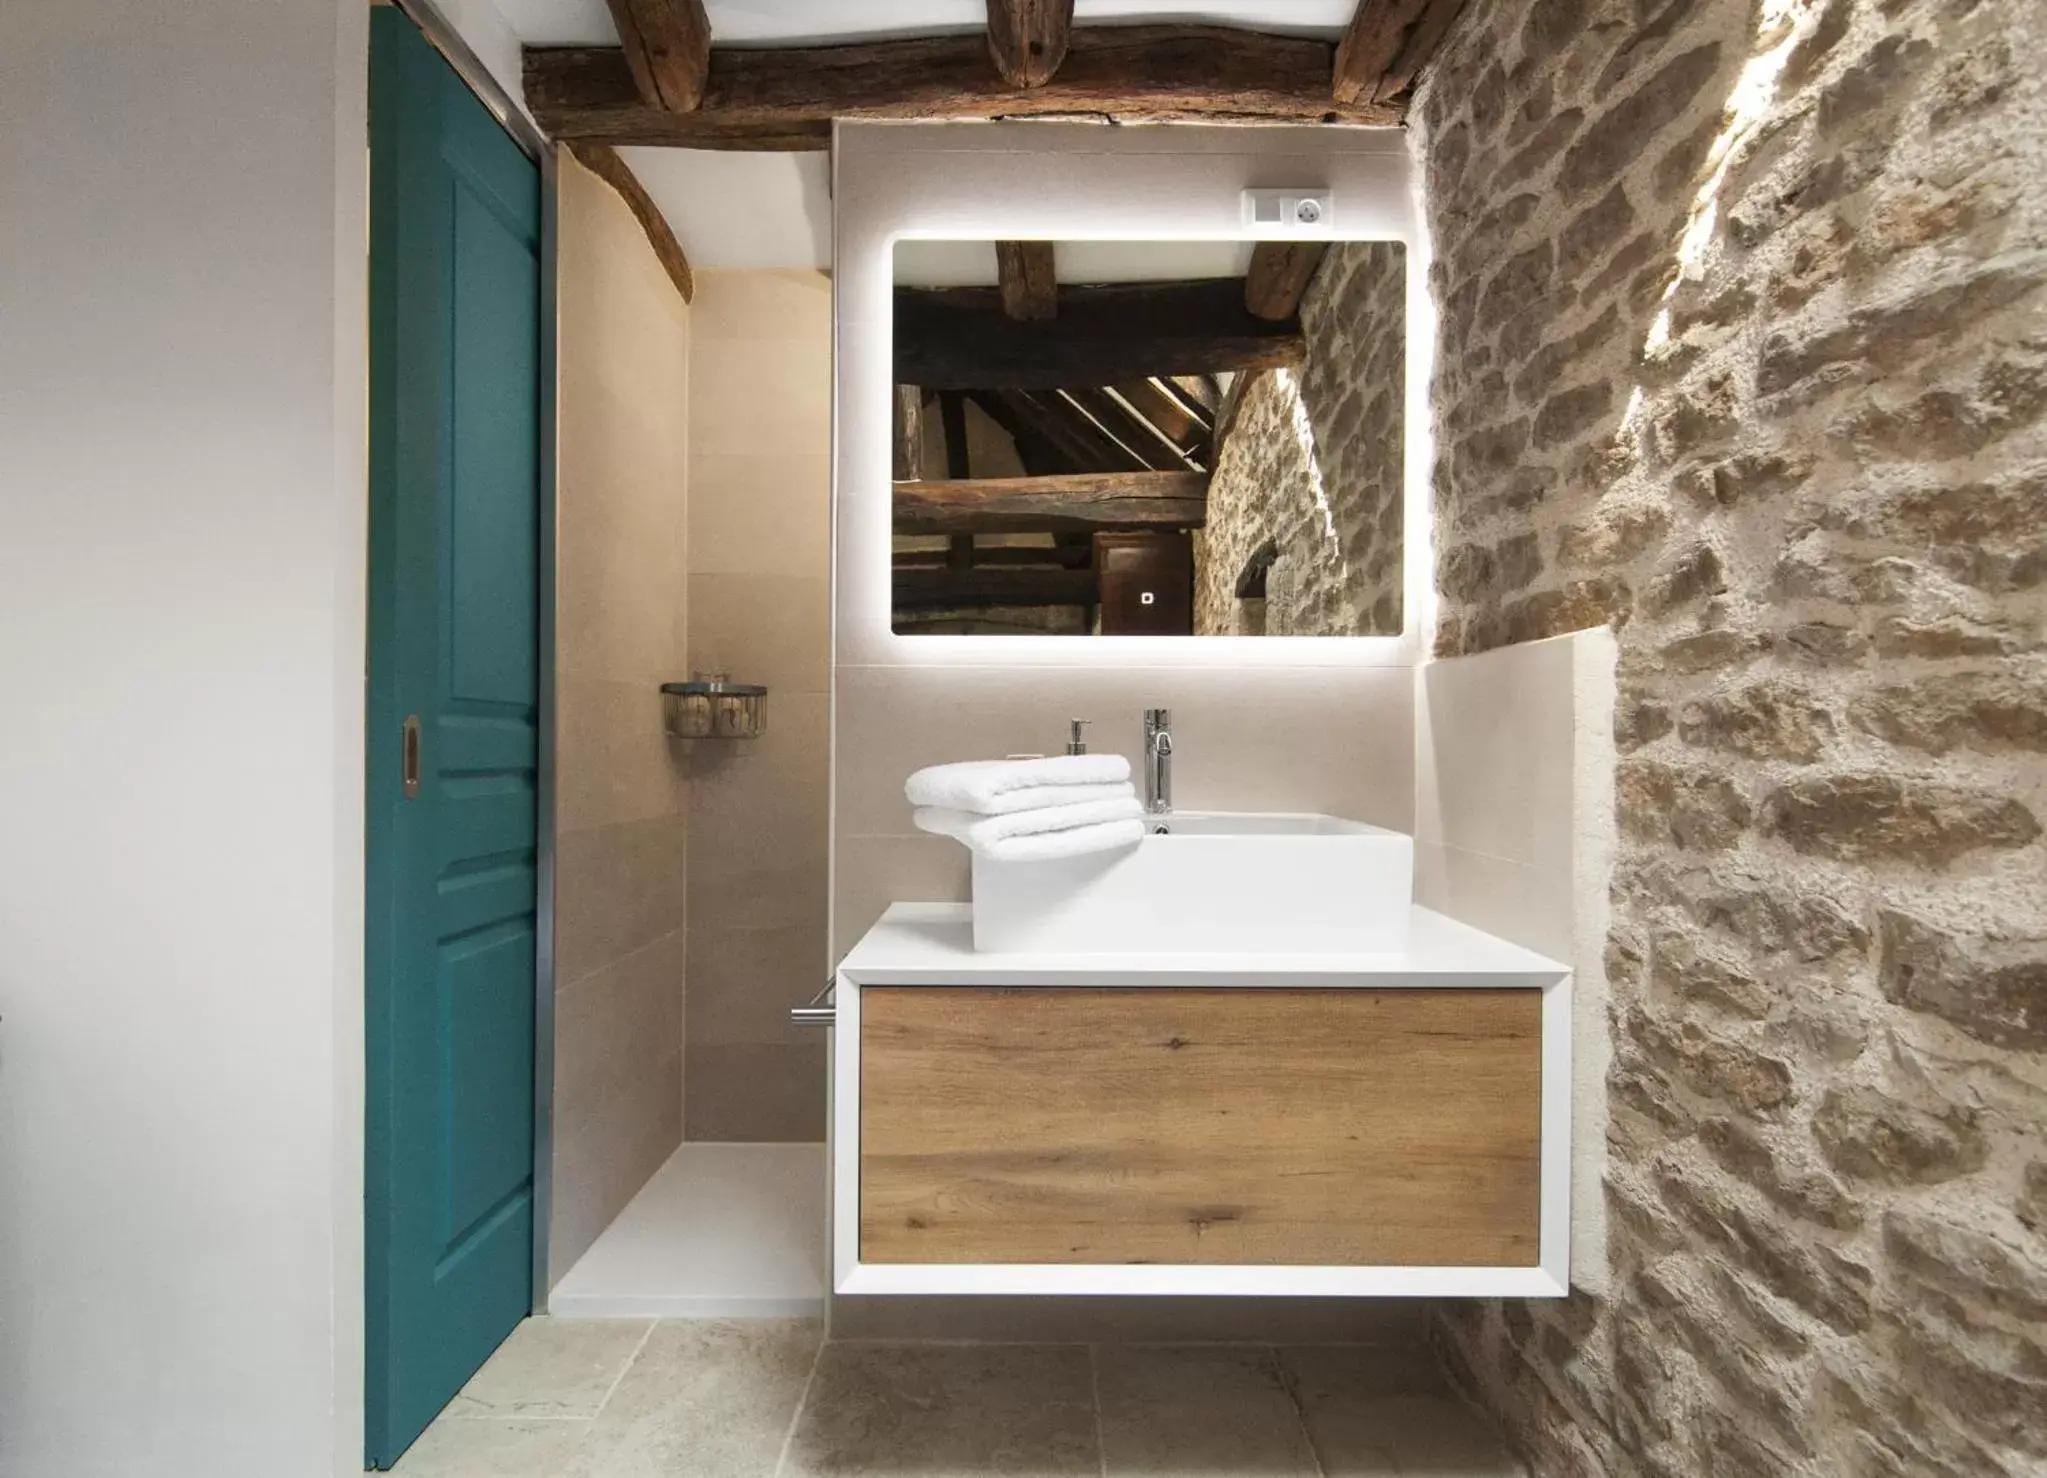 Toilet, Bathroom in Jardin des Sens, la Rente d'Eguilly